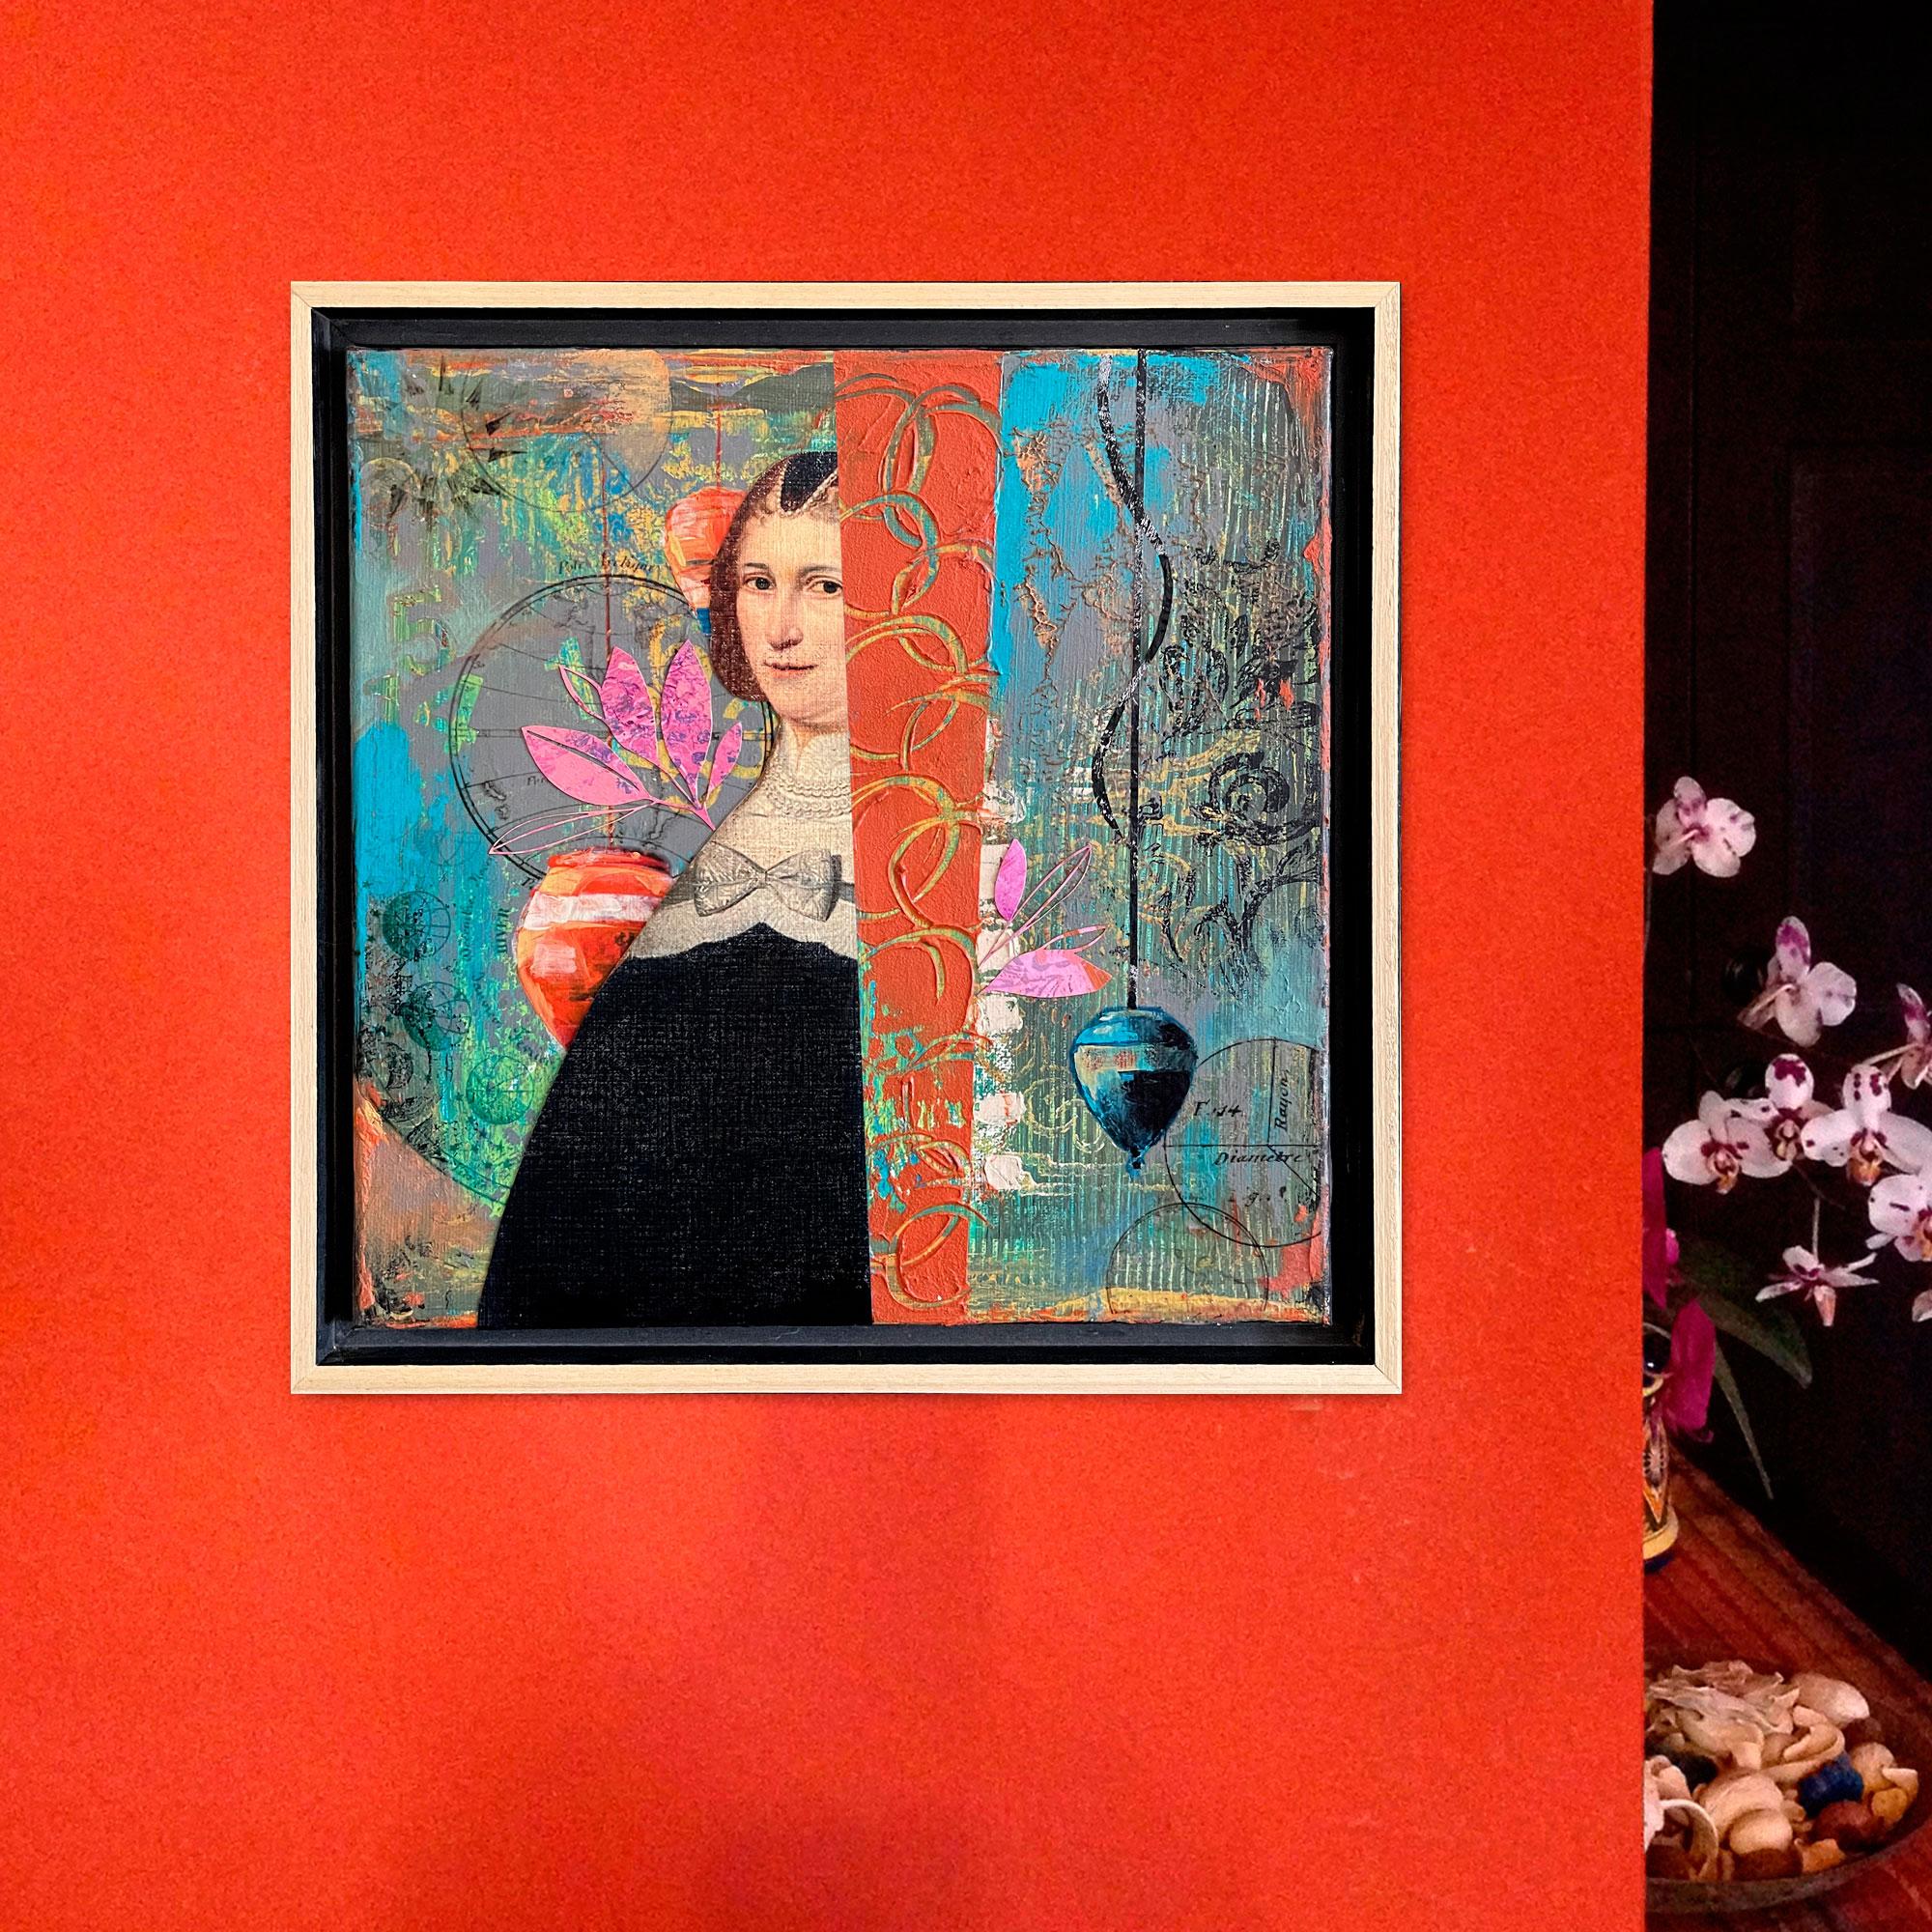 <p>Kommentare der Künstlerin<br>Die Künstlerin Darlene McElroy präsentiert das Porträt einer geheimnisvollen Frau in einer lebendigen Collage. Kreisel hängen an Schnüren, die die ständige Bewegung darstellen. 